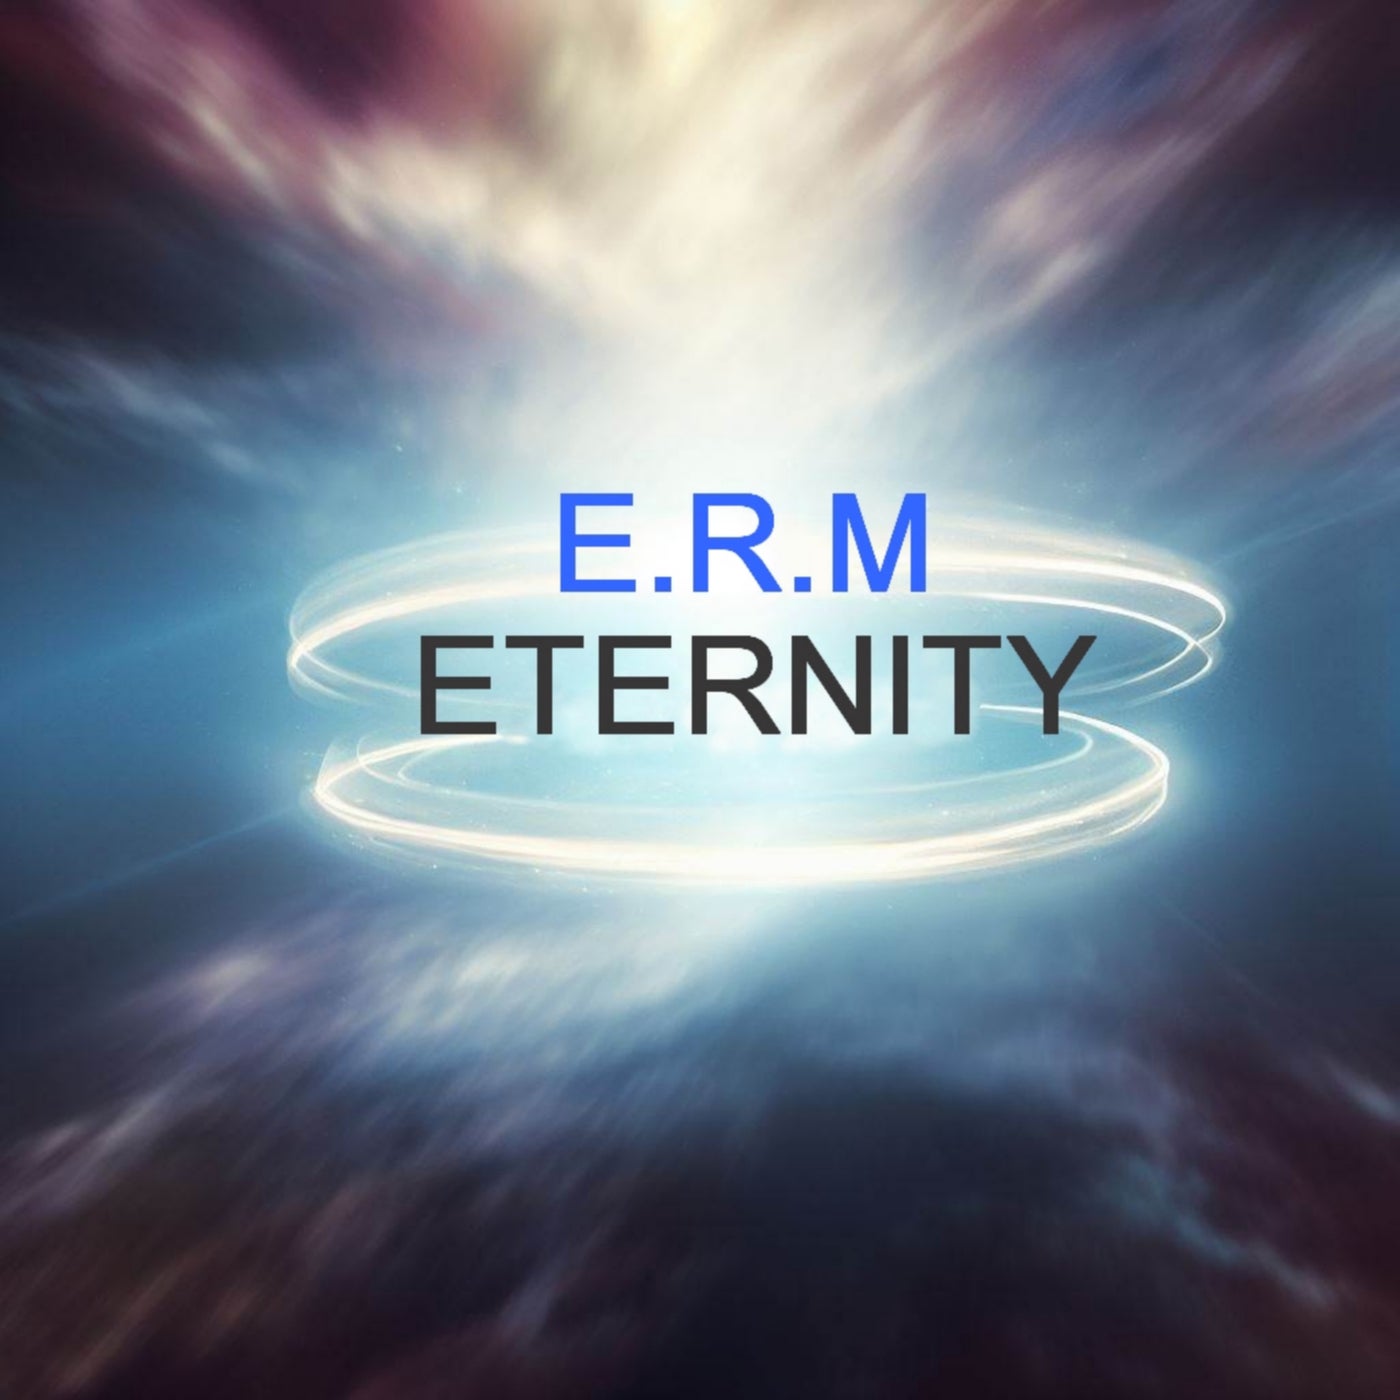 Eternity